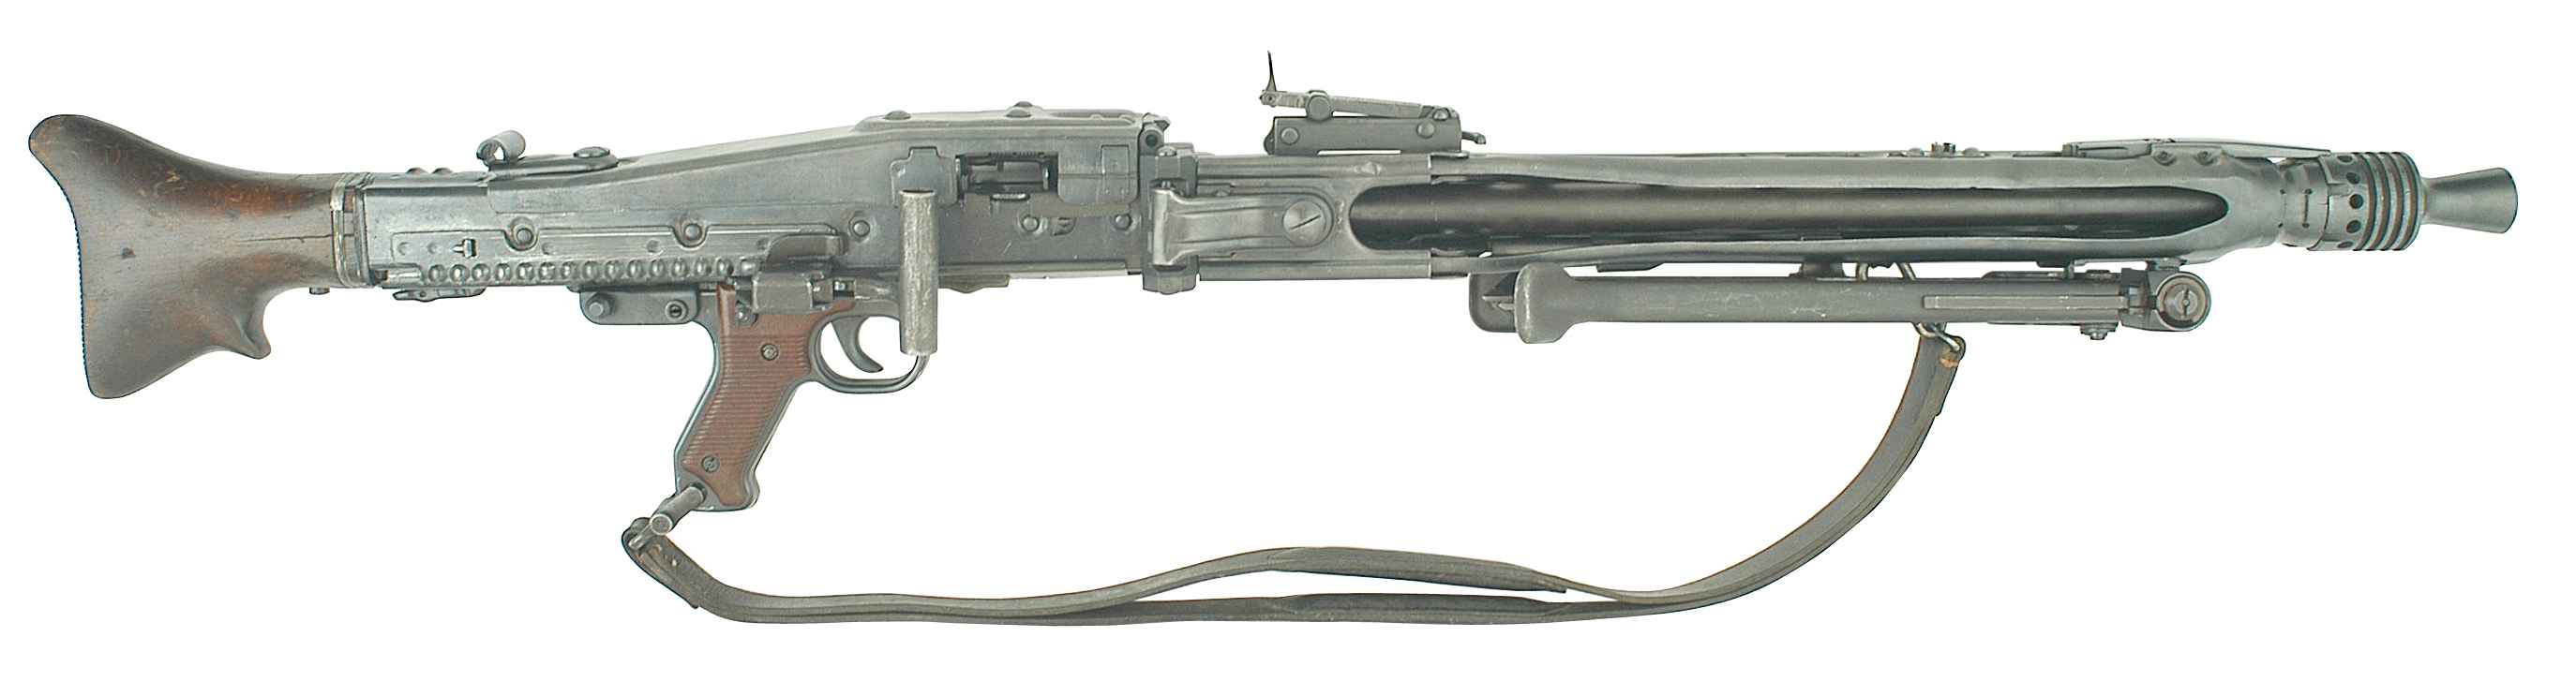 German World War 2 Guns